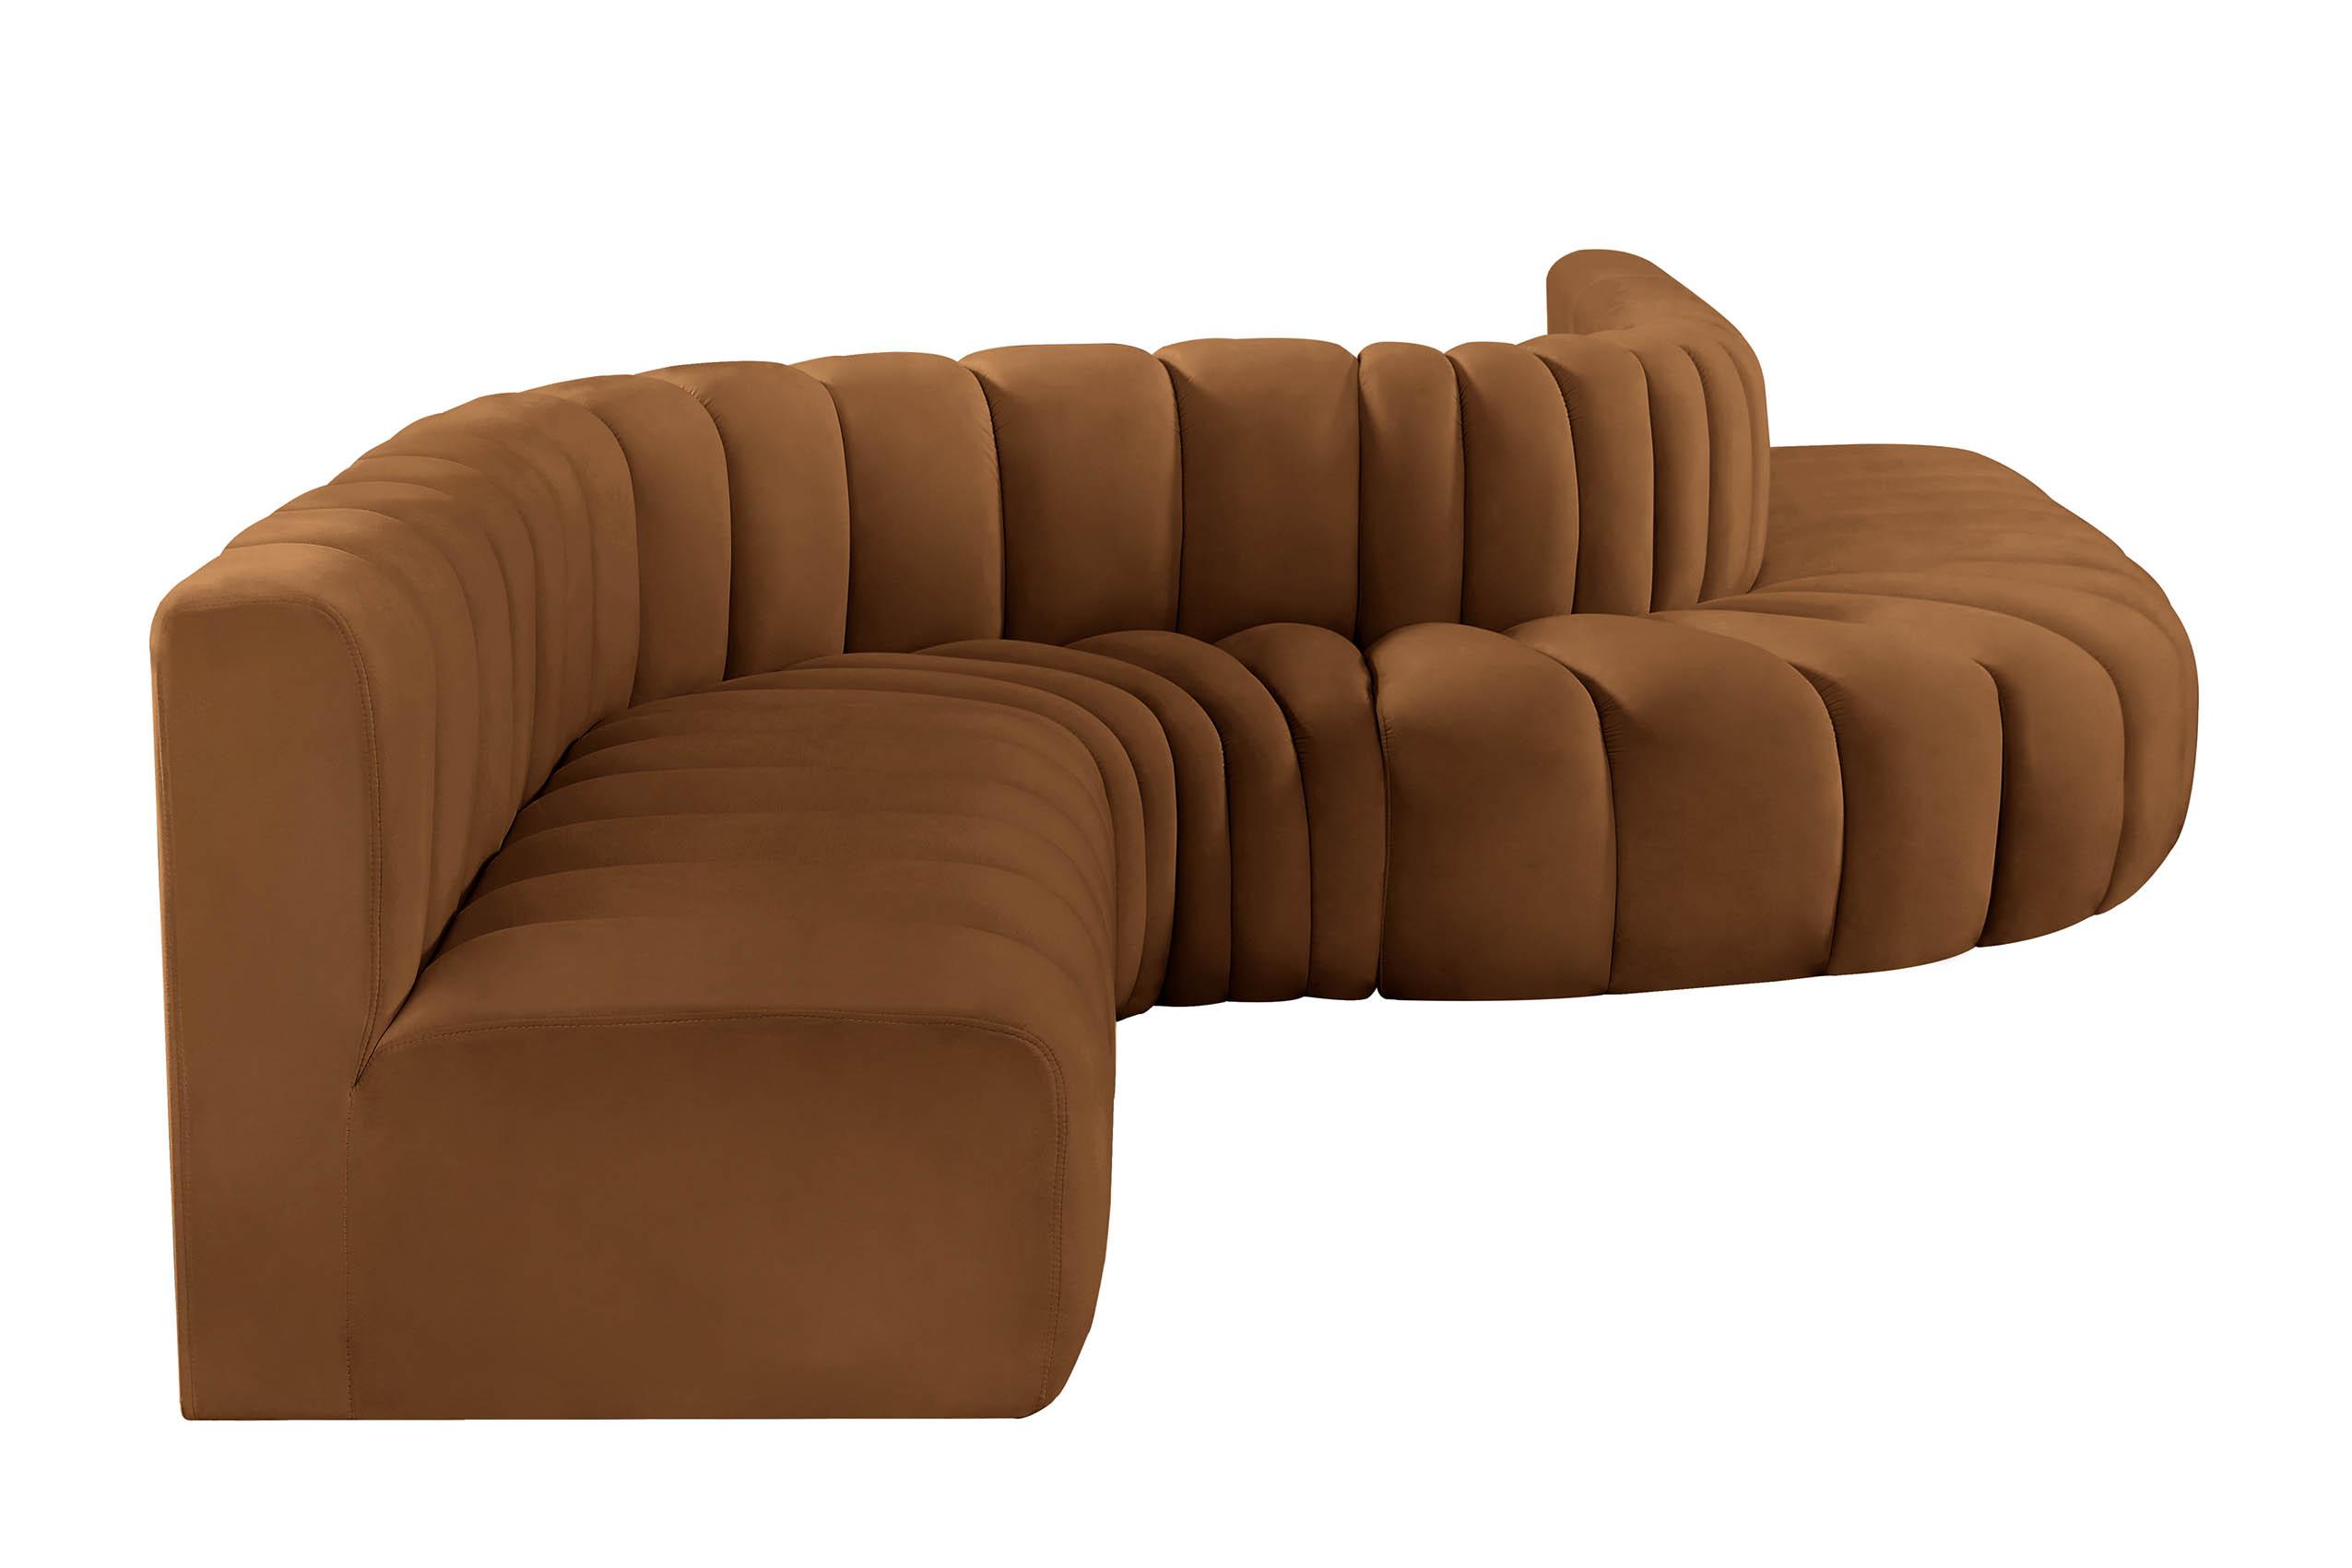 

    
103Saddle-S8C Meridian Furniture Modular Sectional Sofa
